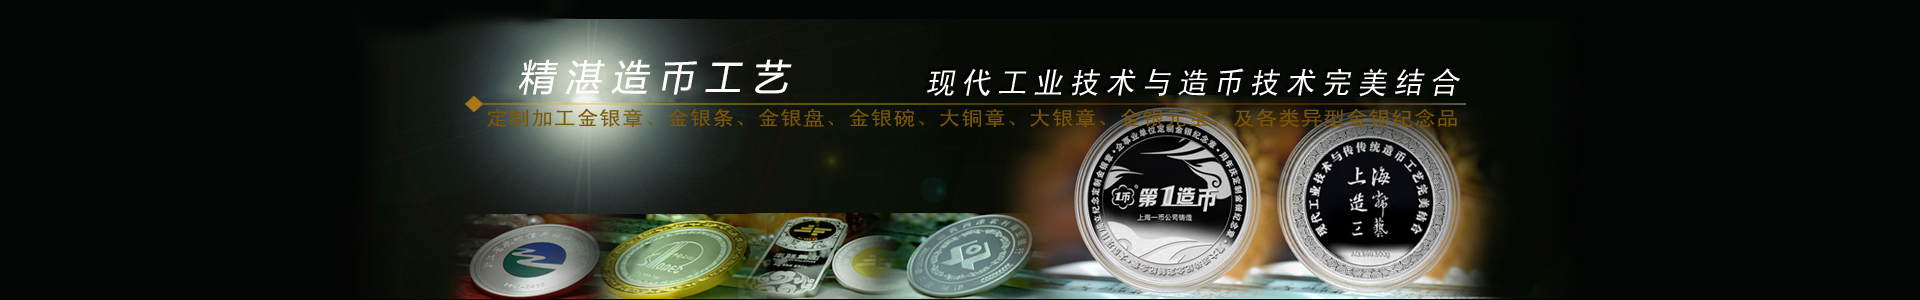 会议纪念品_纪念品设计_定制纪念章_定制纪念币_上海造币厂